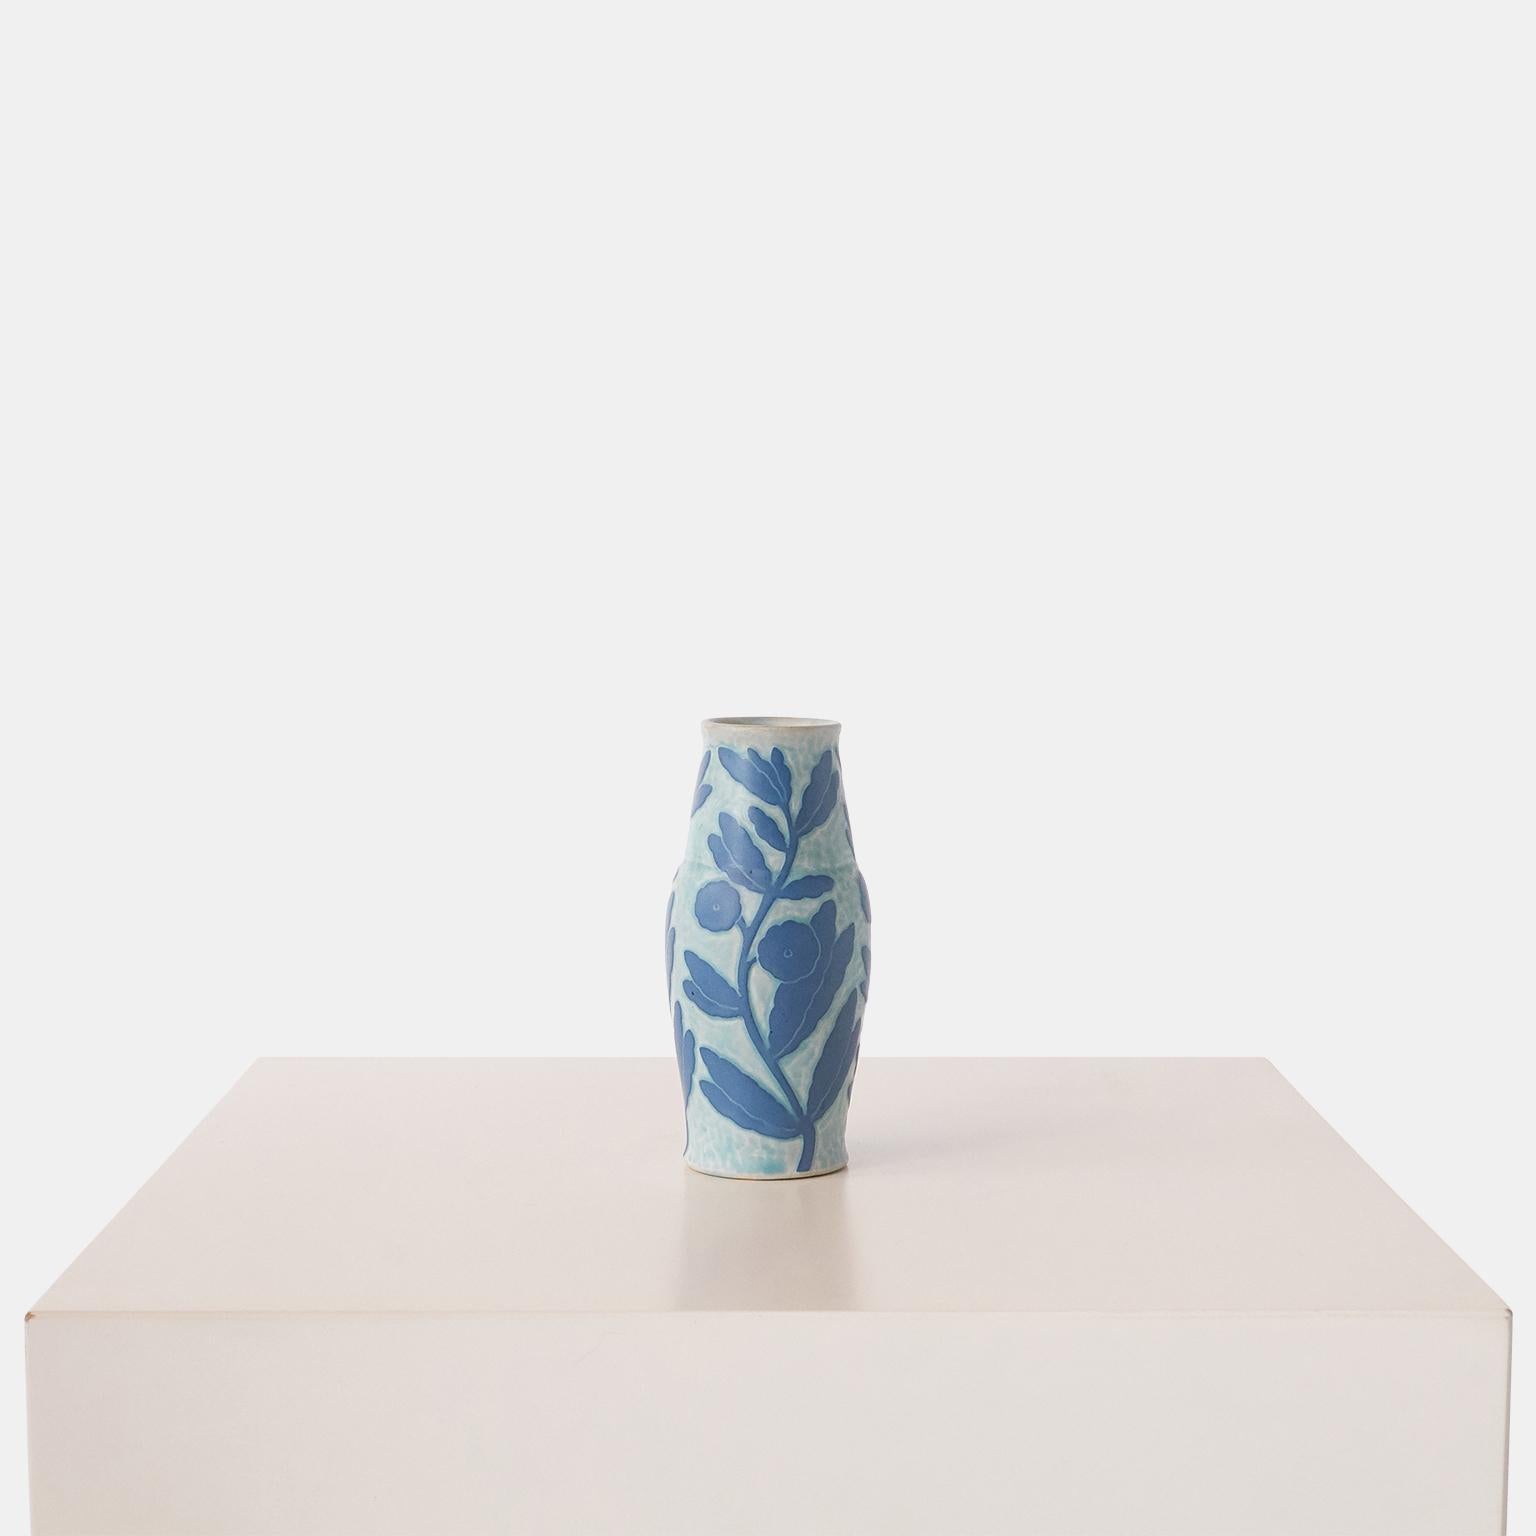 Vase bleu fait main par Josef Ekberg pour Gustavsberg. Chaque pièce est unique et décorée selon la technique du Sgrafitto, mise au point par Ekberg lui-même.

Signé : GUSTAVSBERG, 1925 JE